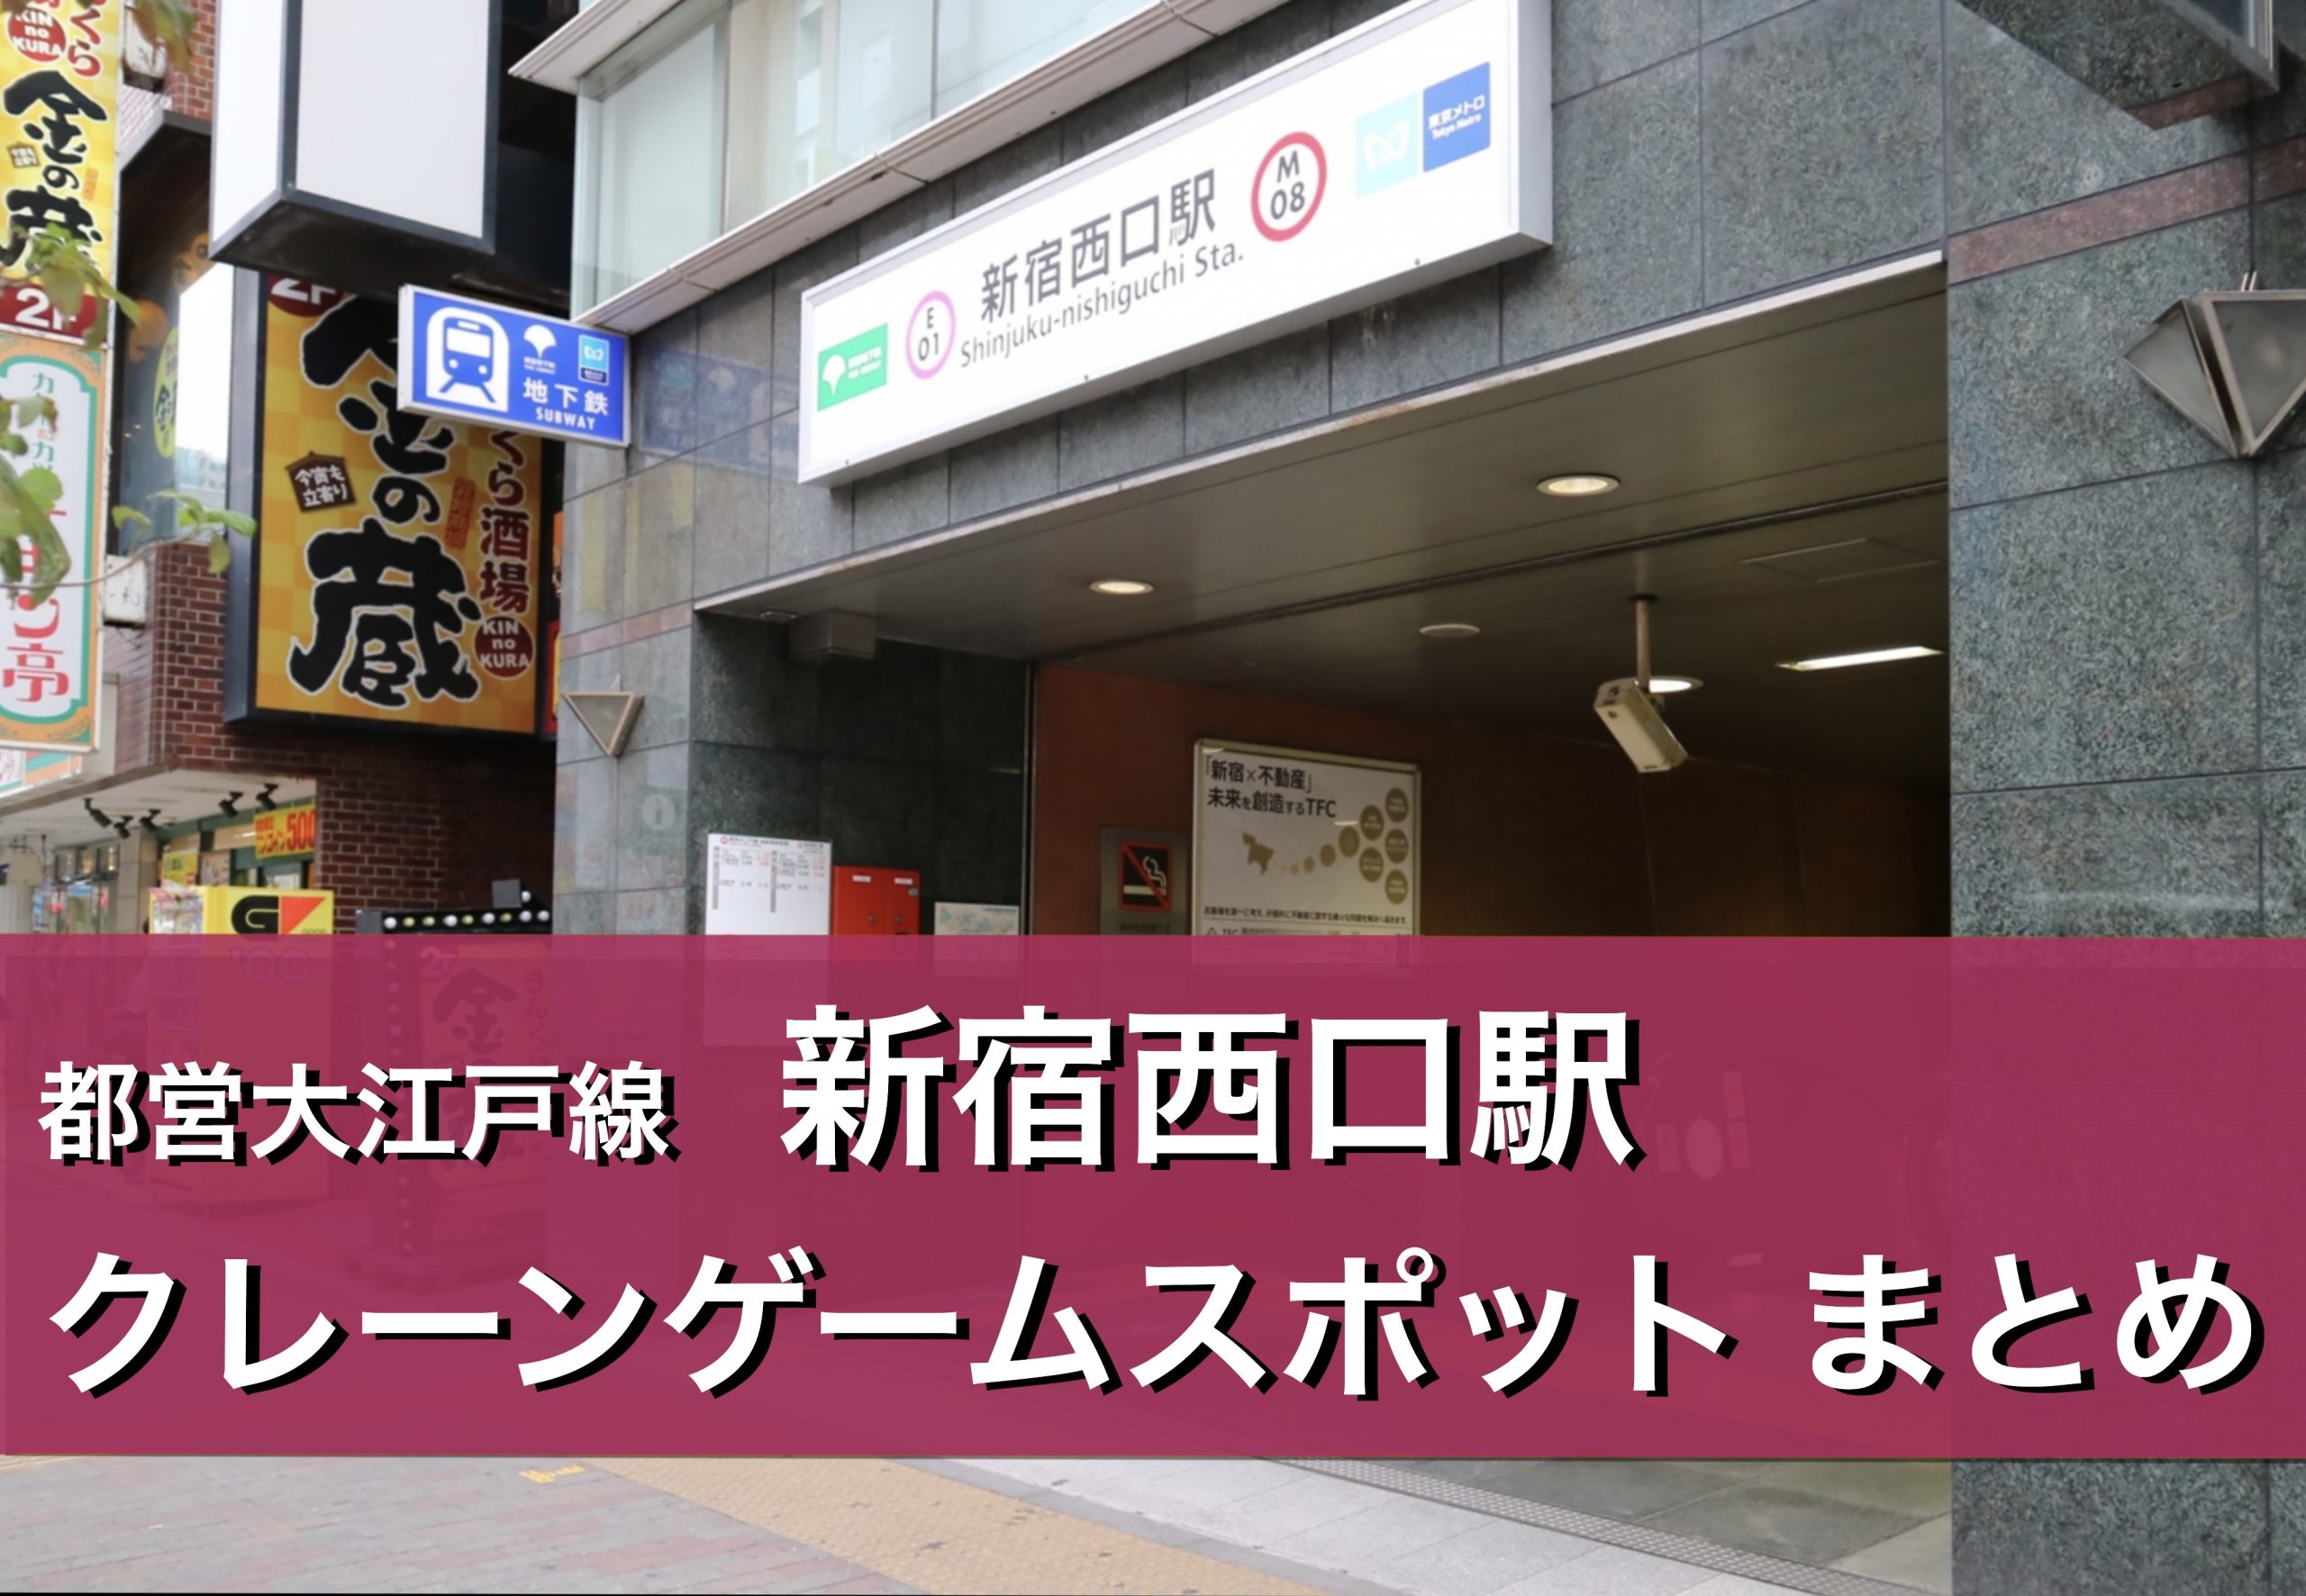 【新宿西口駅】クレーンゲームができる場所